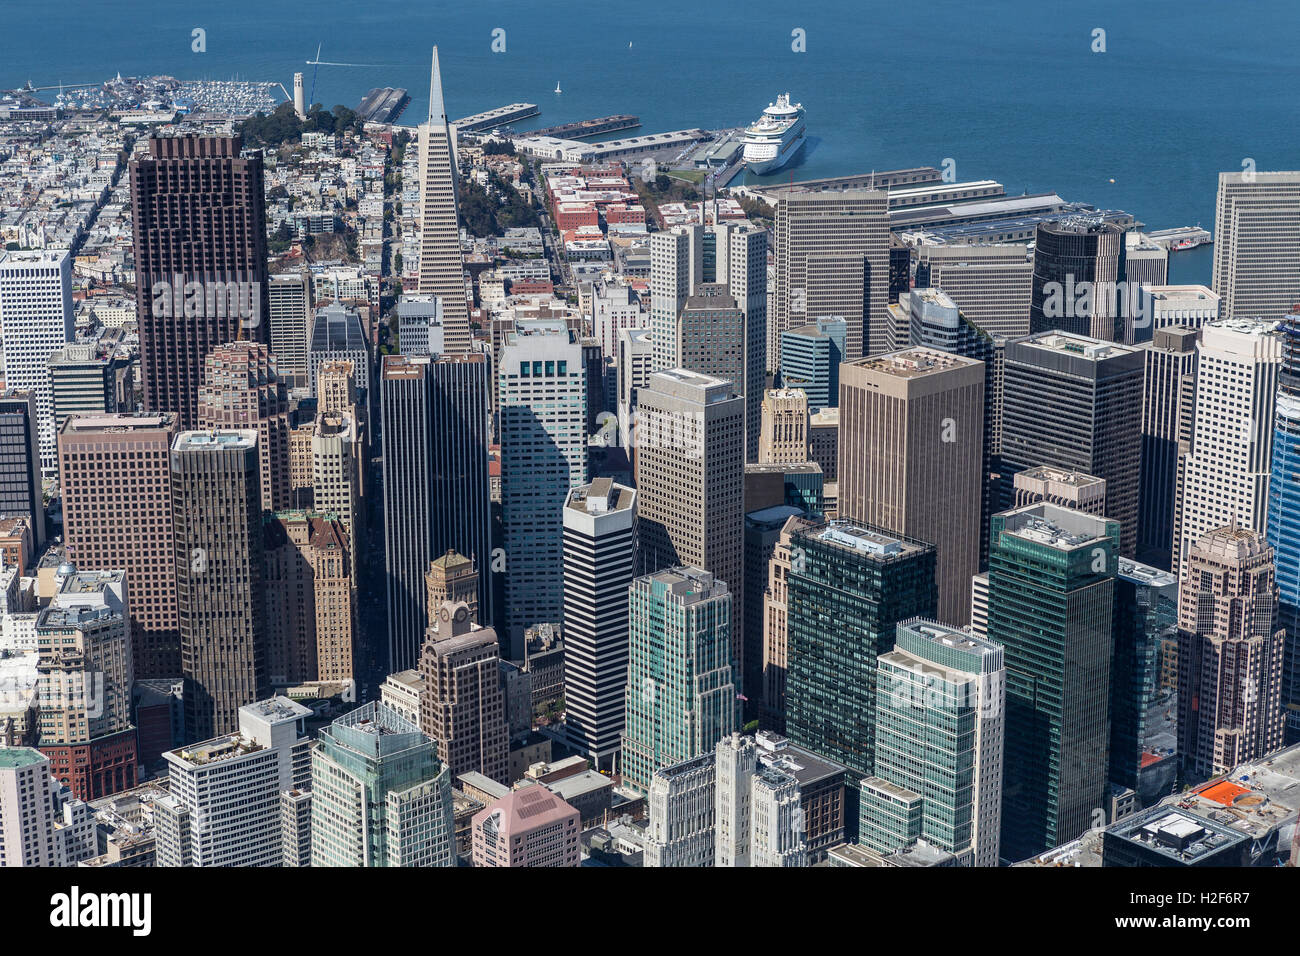 El centro de la ciudad de San Francisco y el waterfront vista aérea. Foto de stock